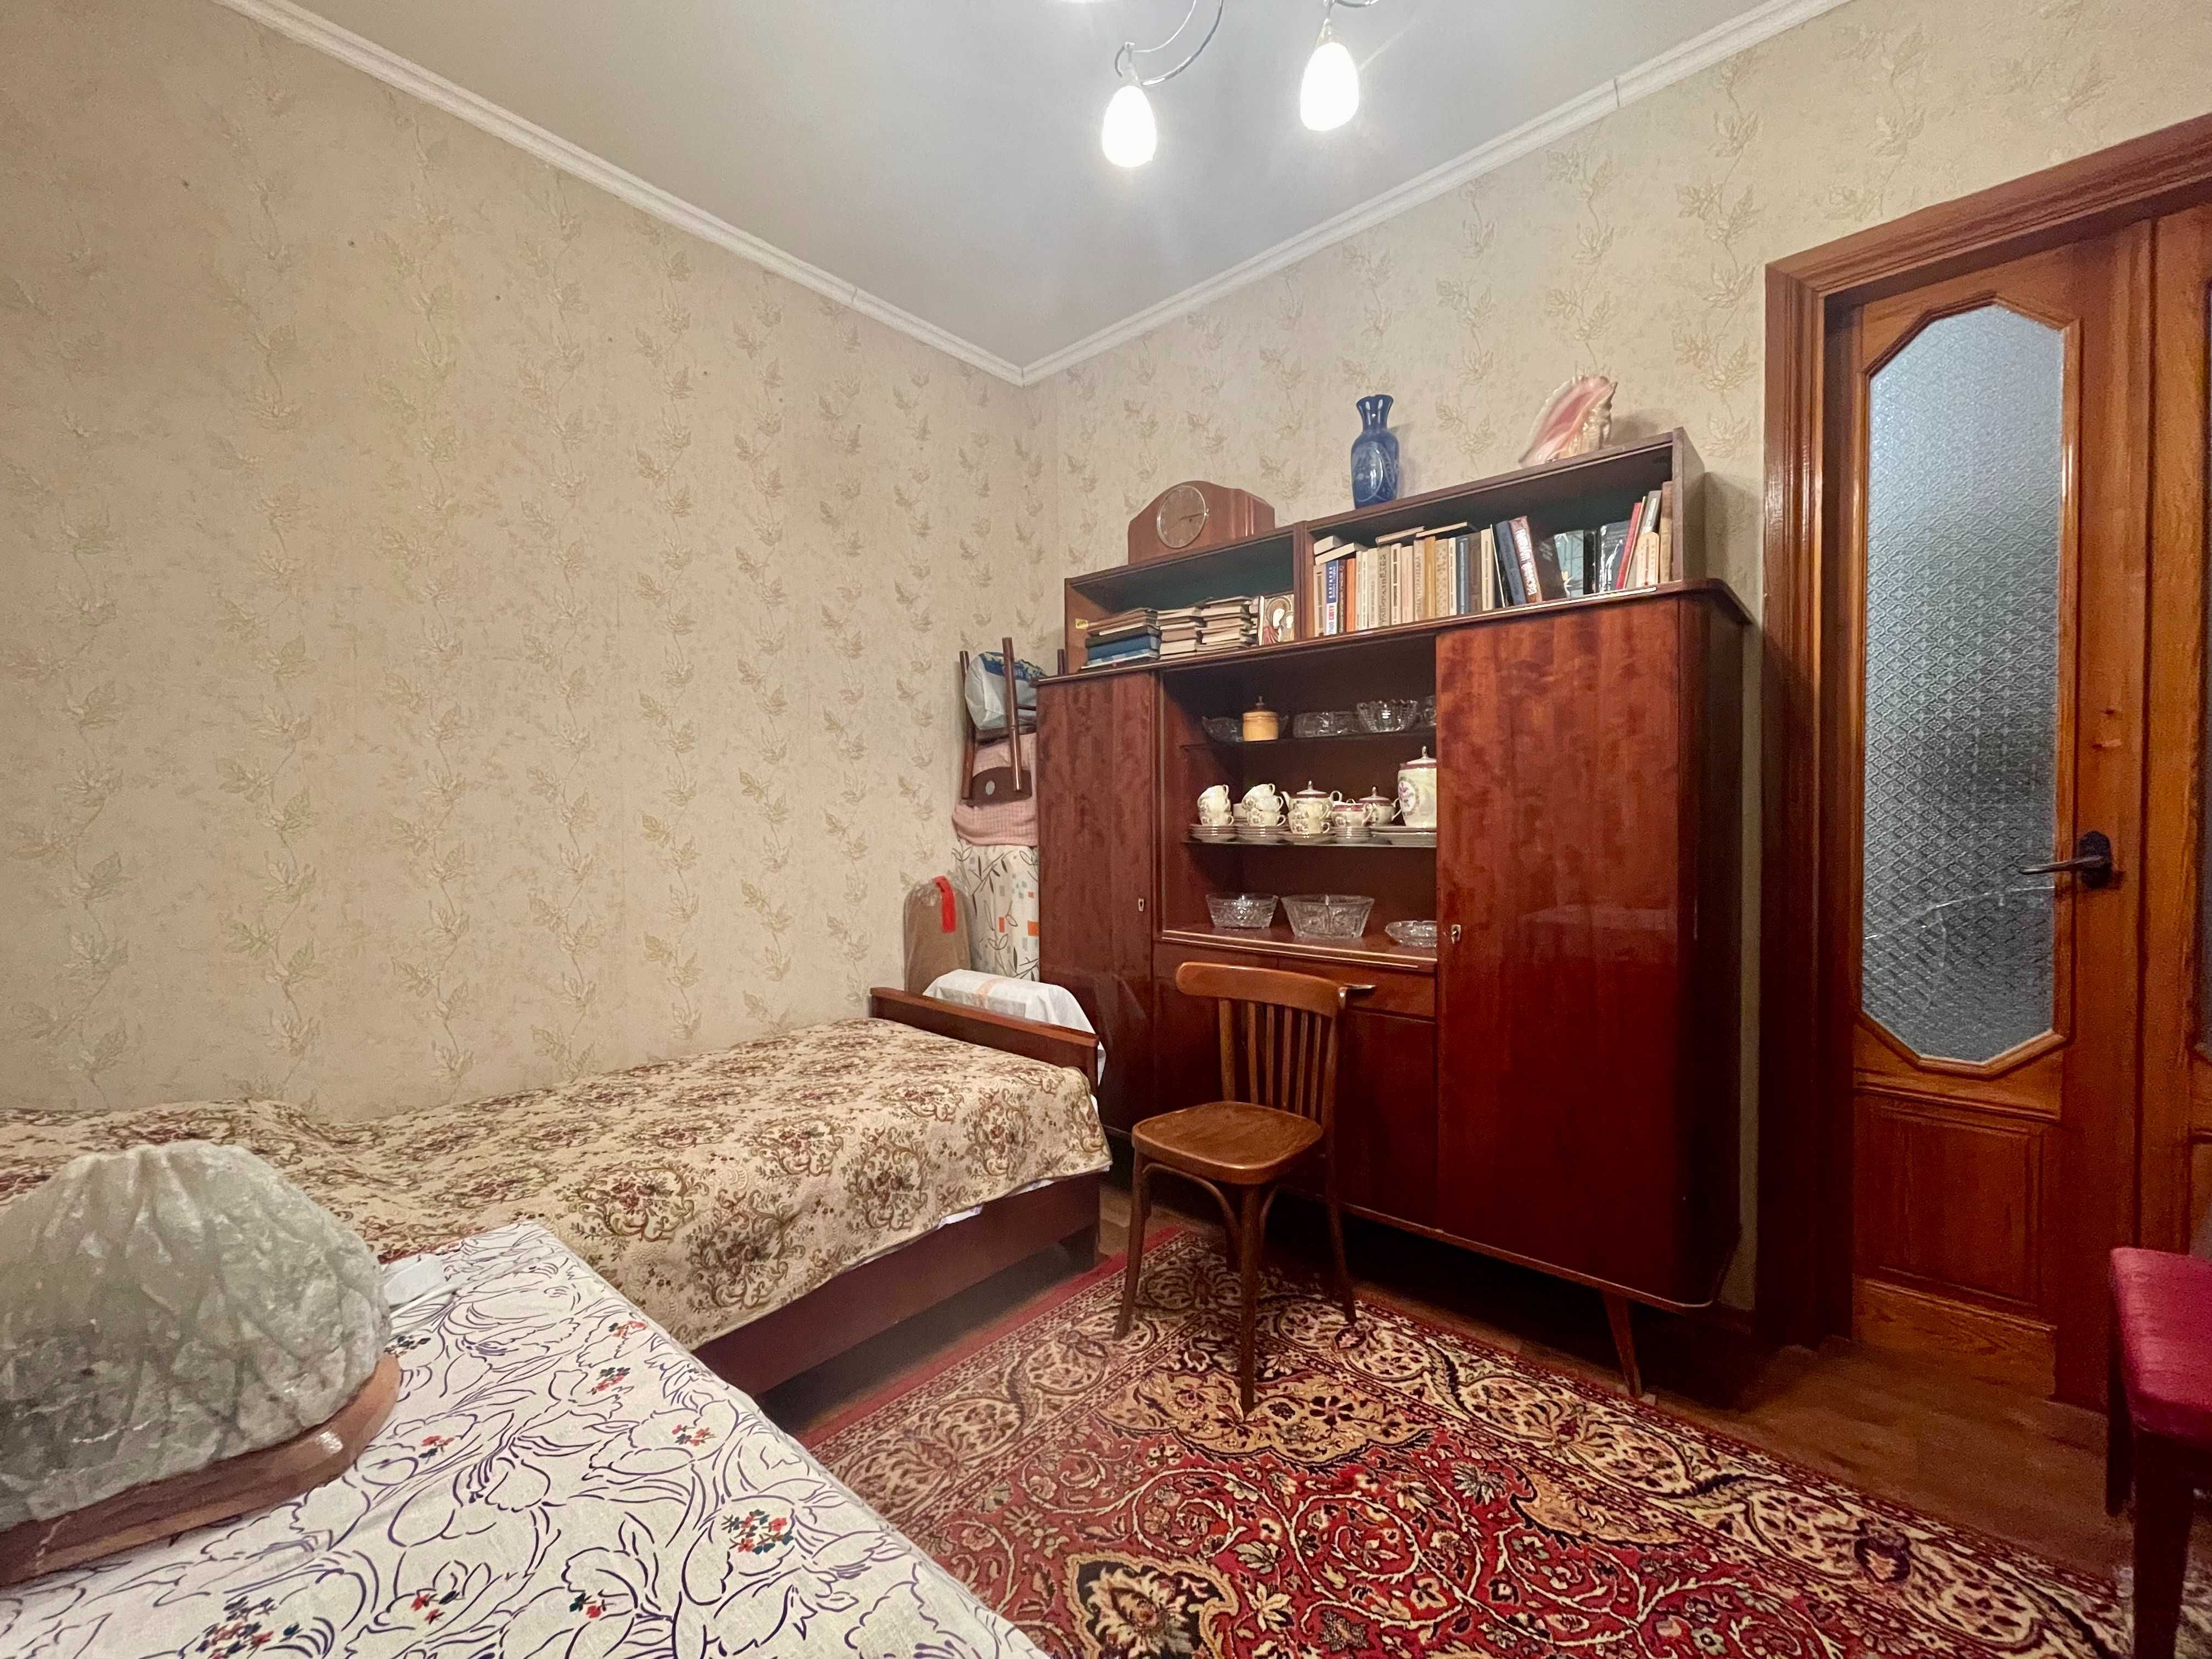 Продам будинок комфортний для проживання в м. Дніпро